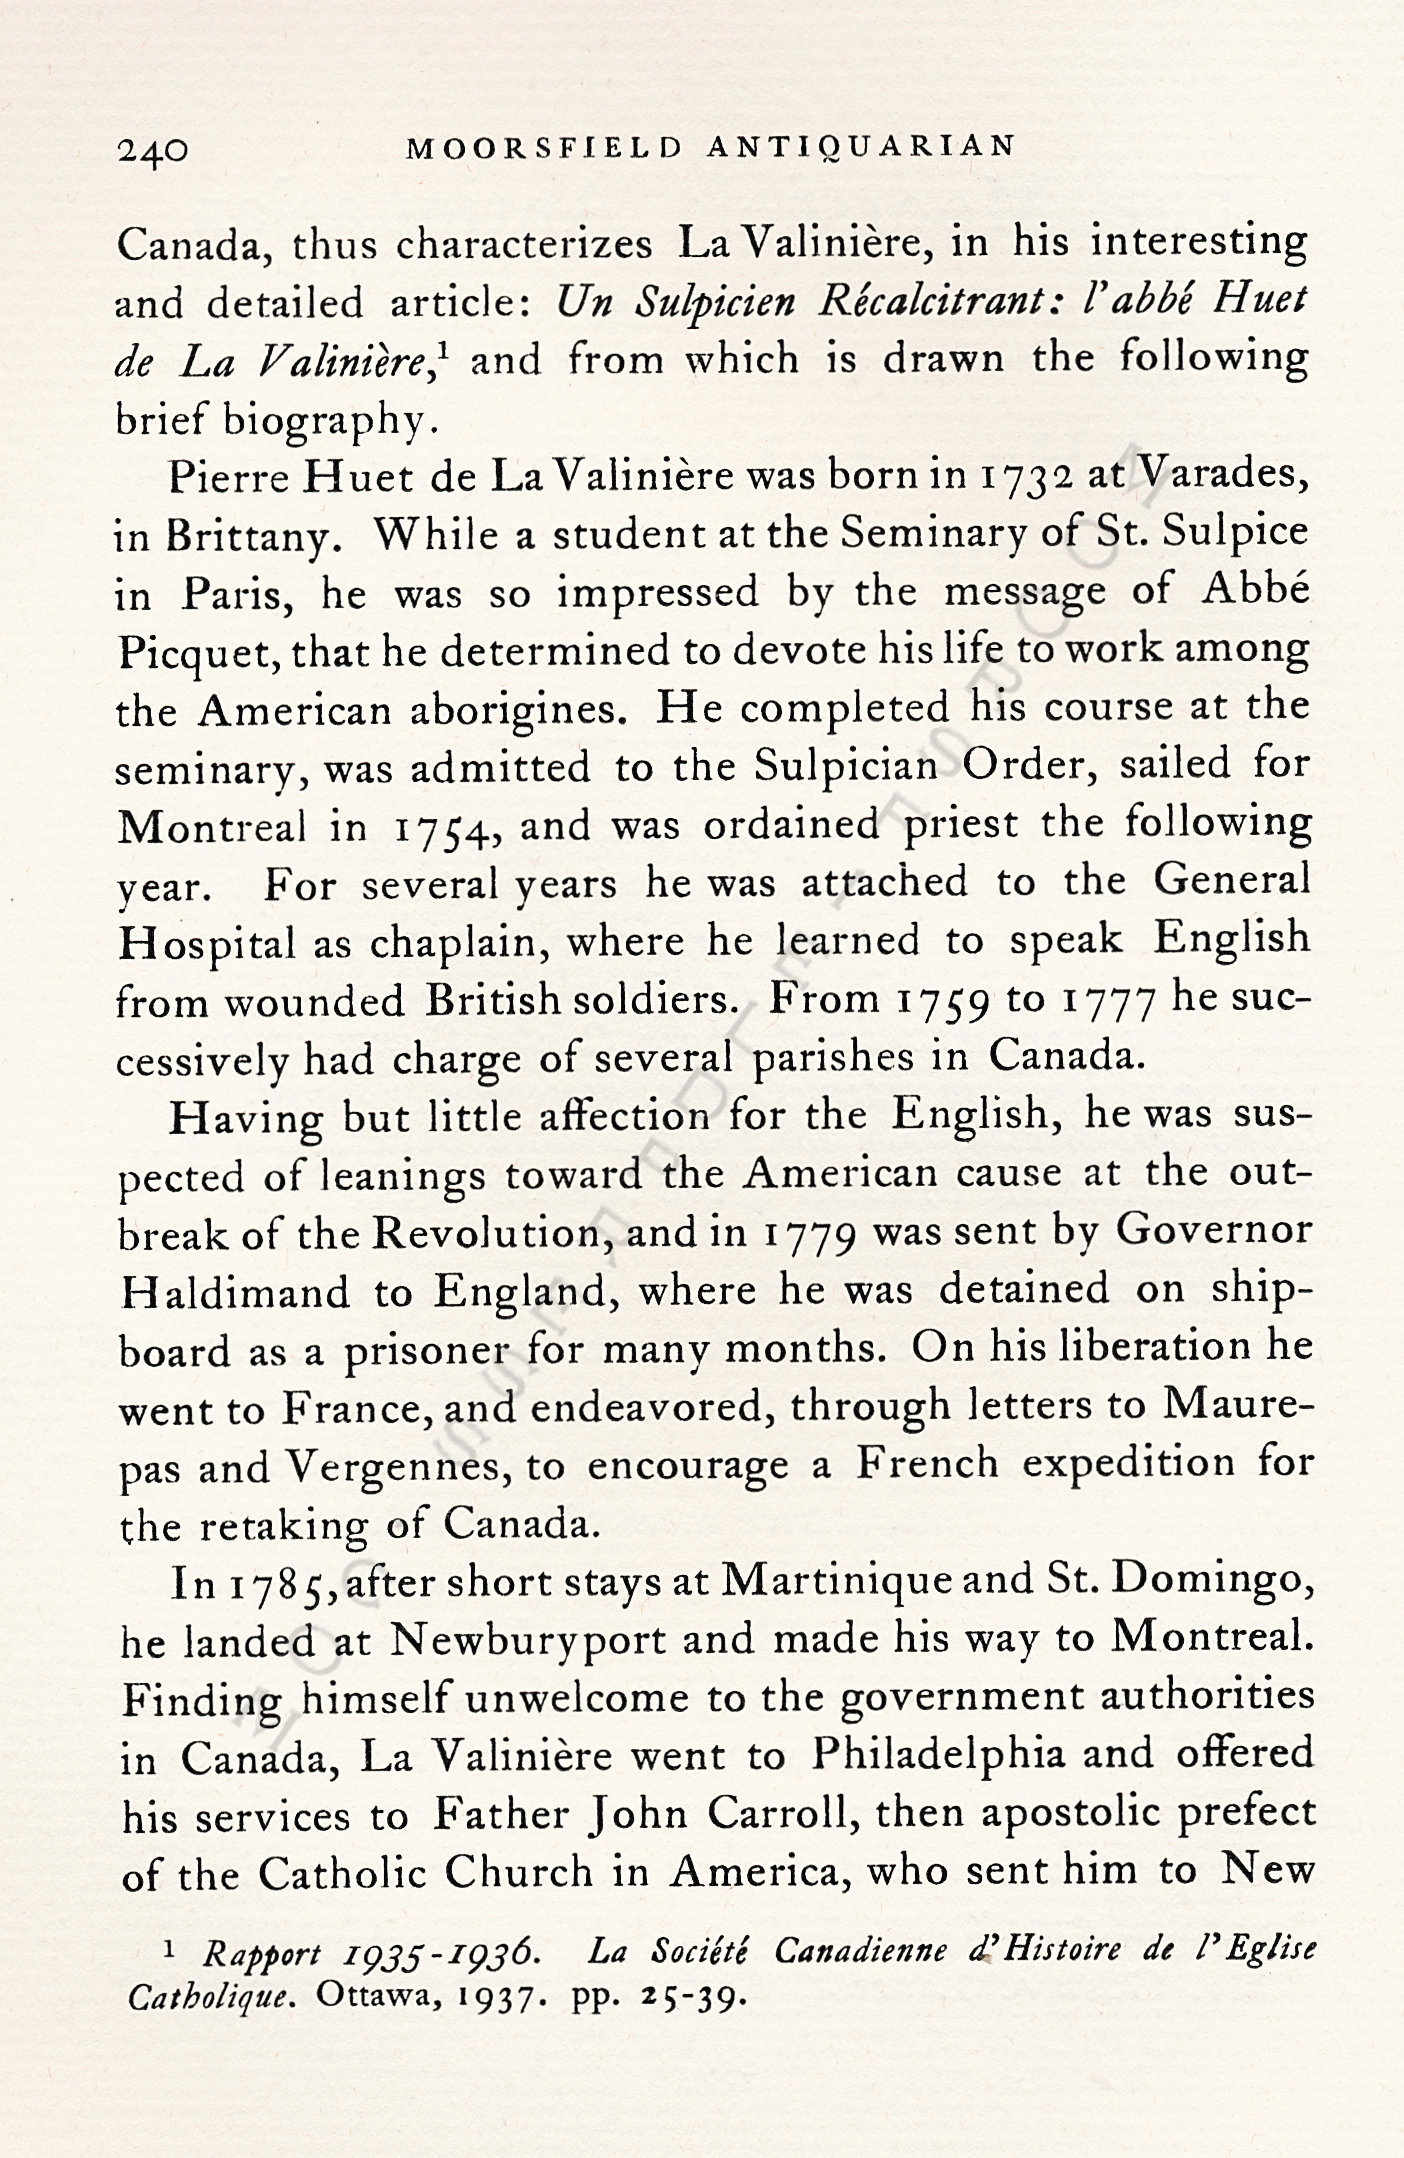 Pliny
                      Moore Papers-Pierre Huet de La Valiniere, Priest
                      on Lake Champlain, 1790-1791